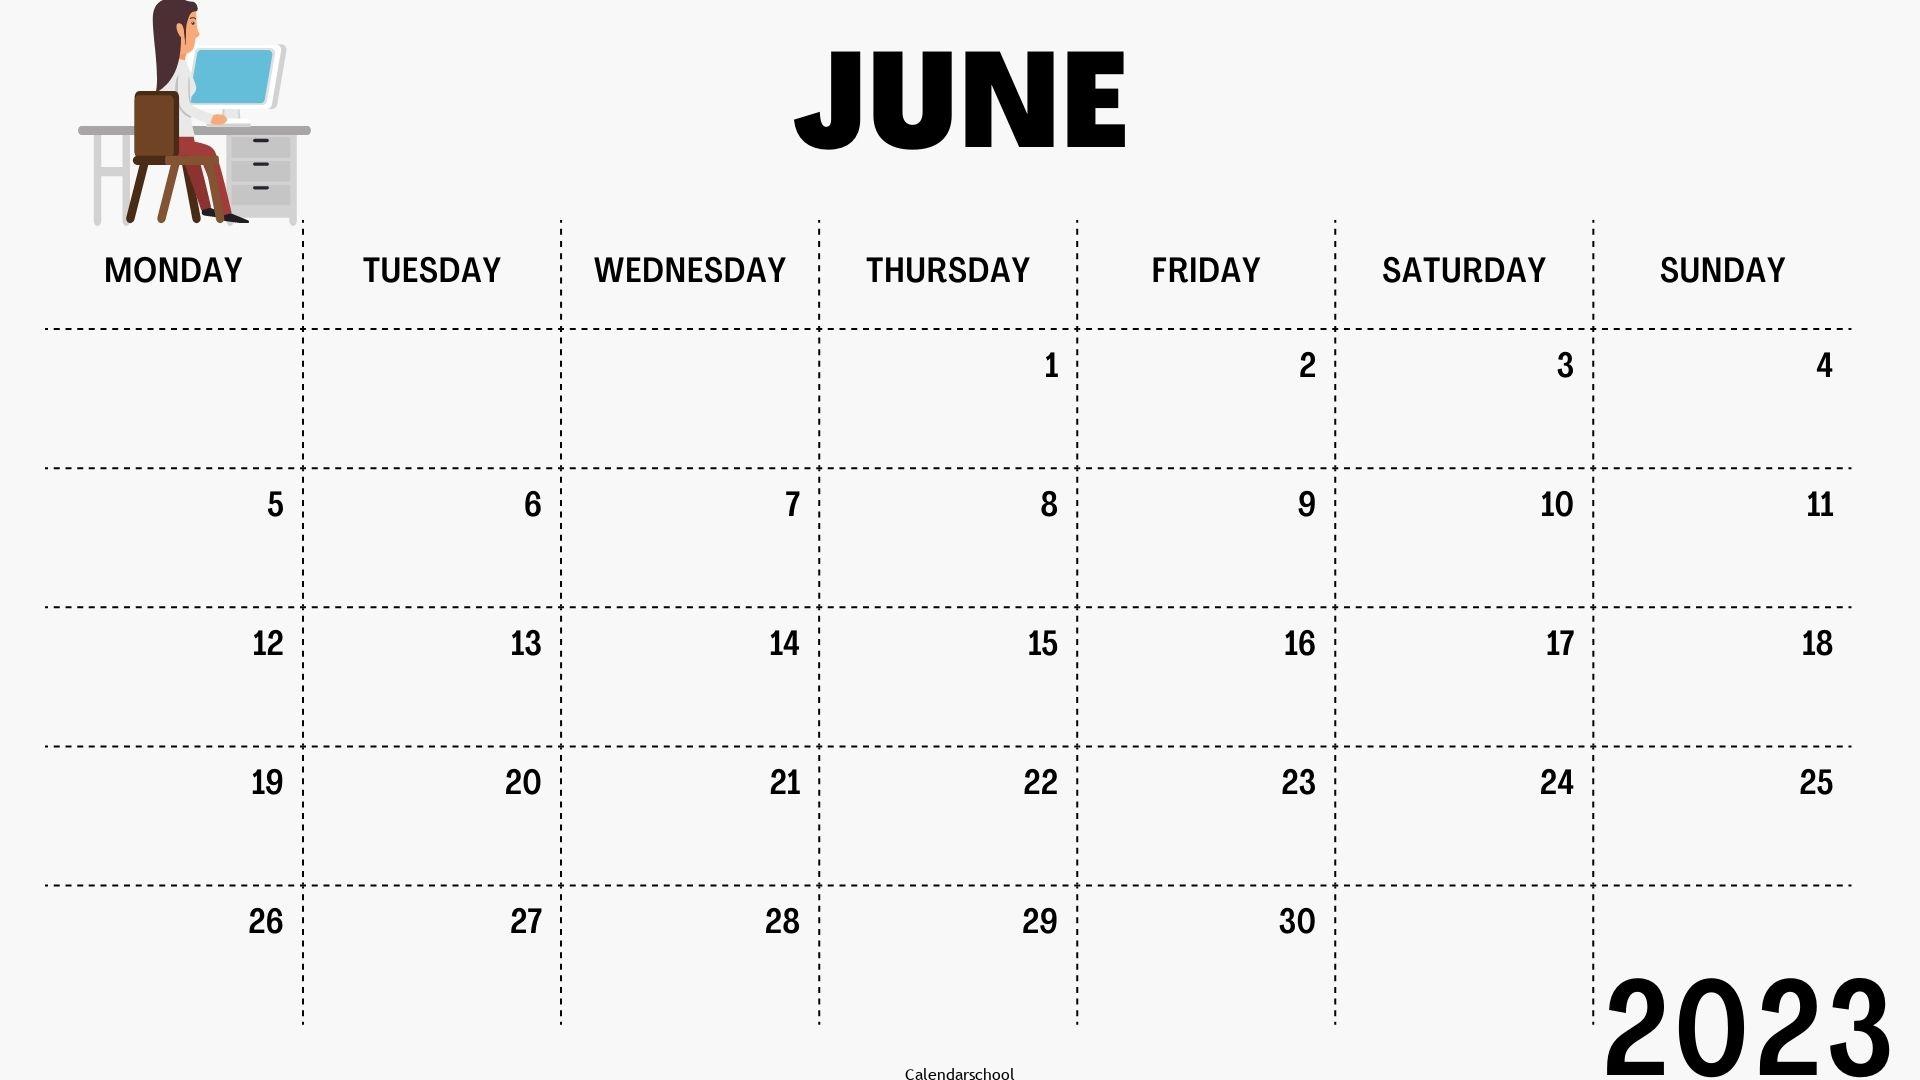 June 2023 Moon Calendar